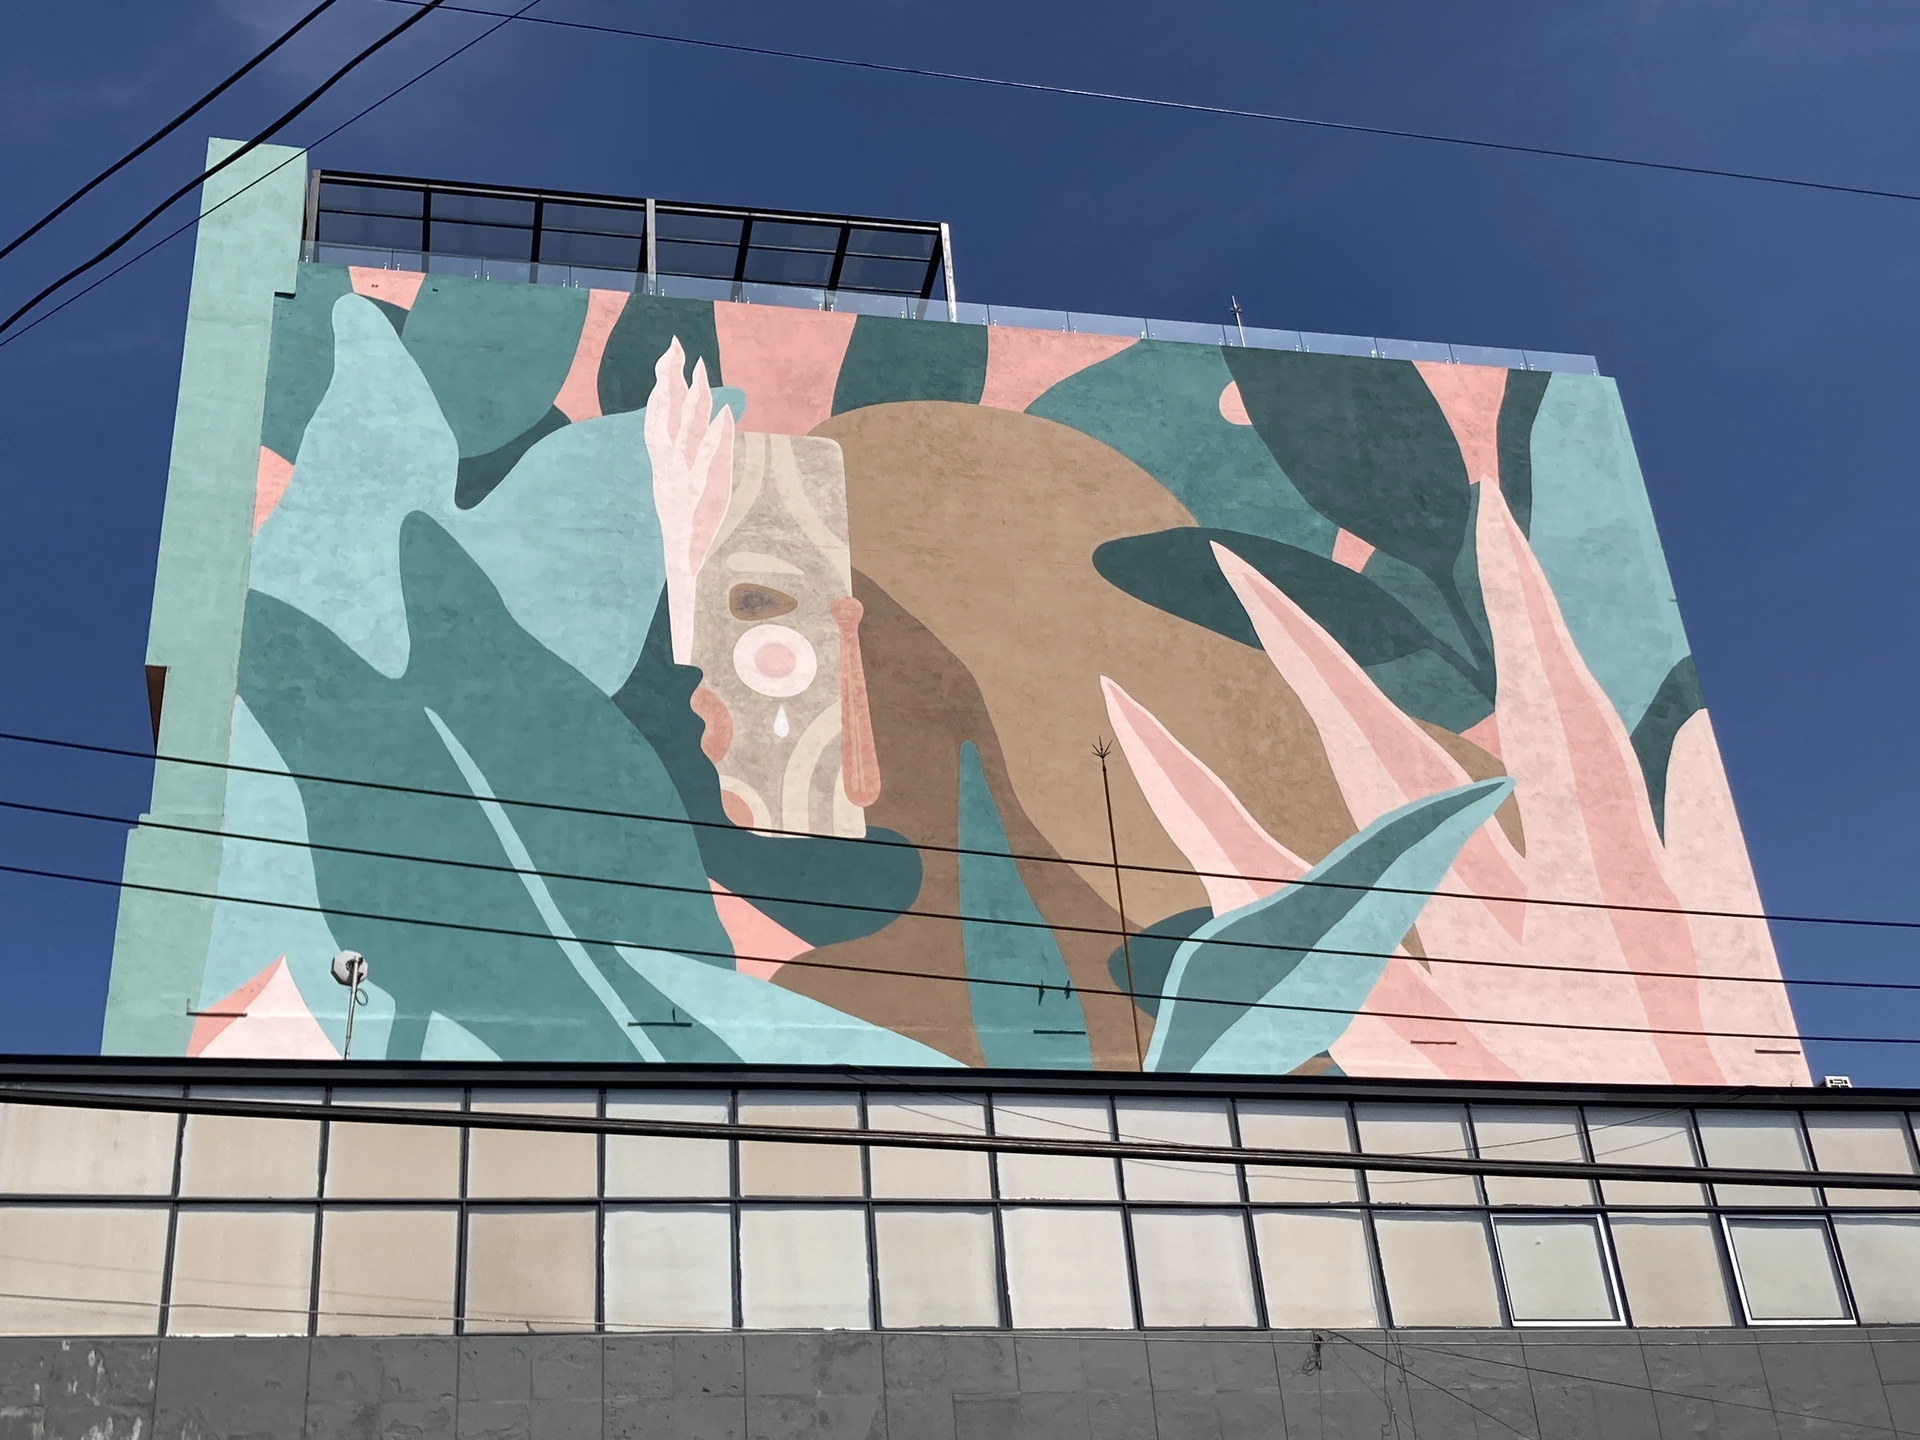 Oeuvre de Street Art à Plan de Ayala